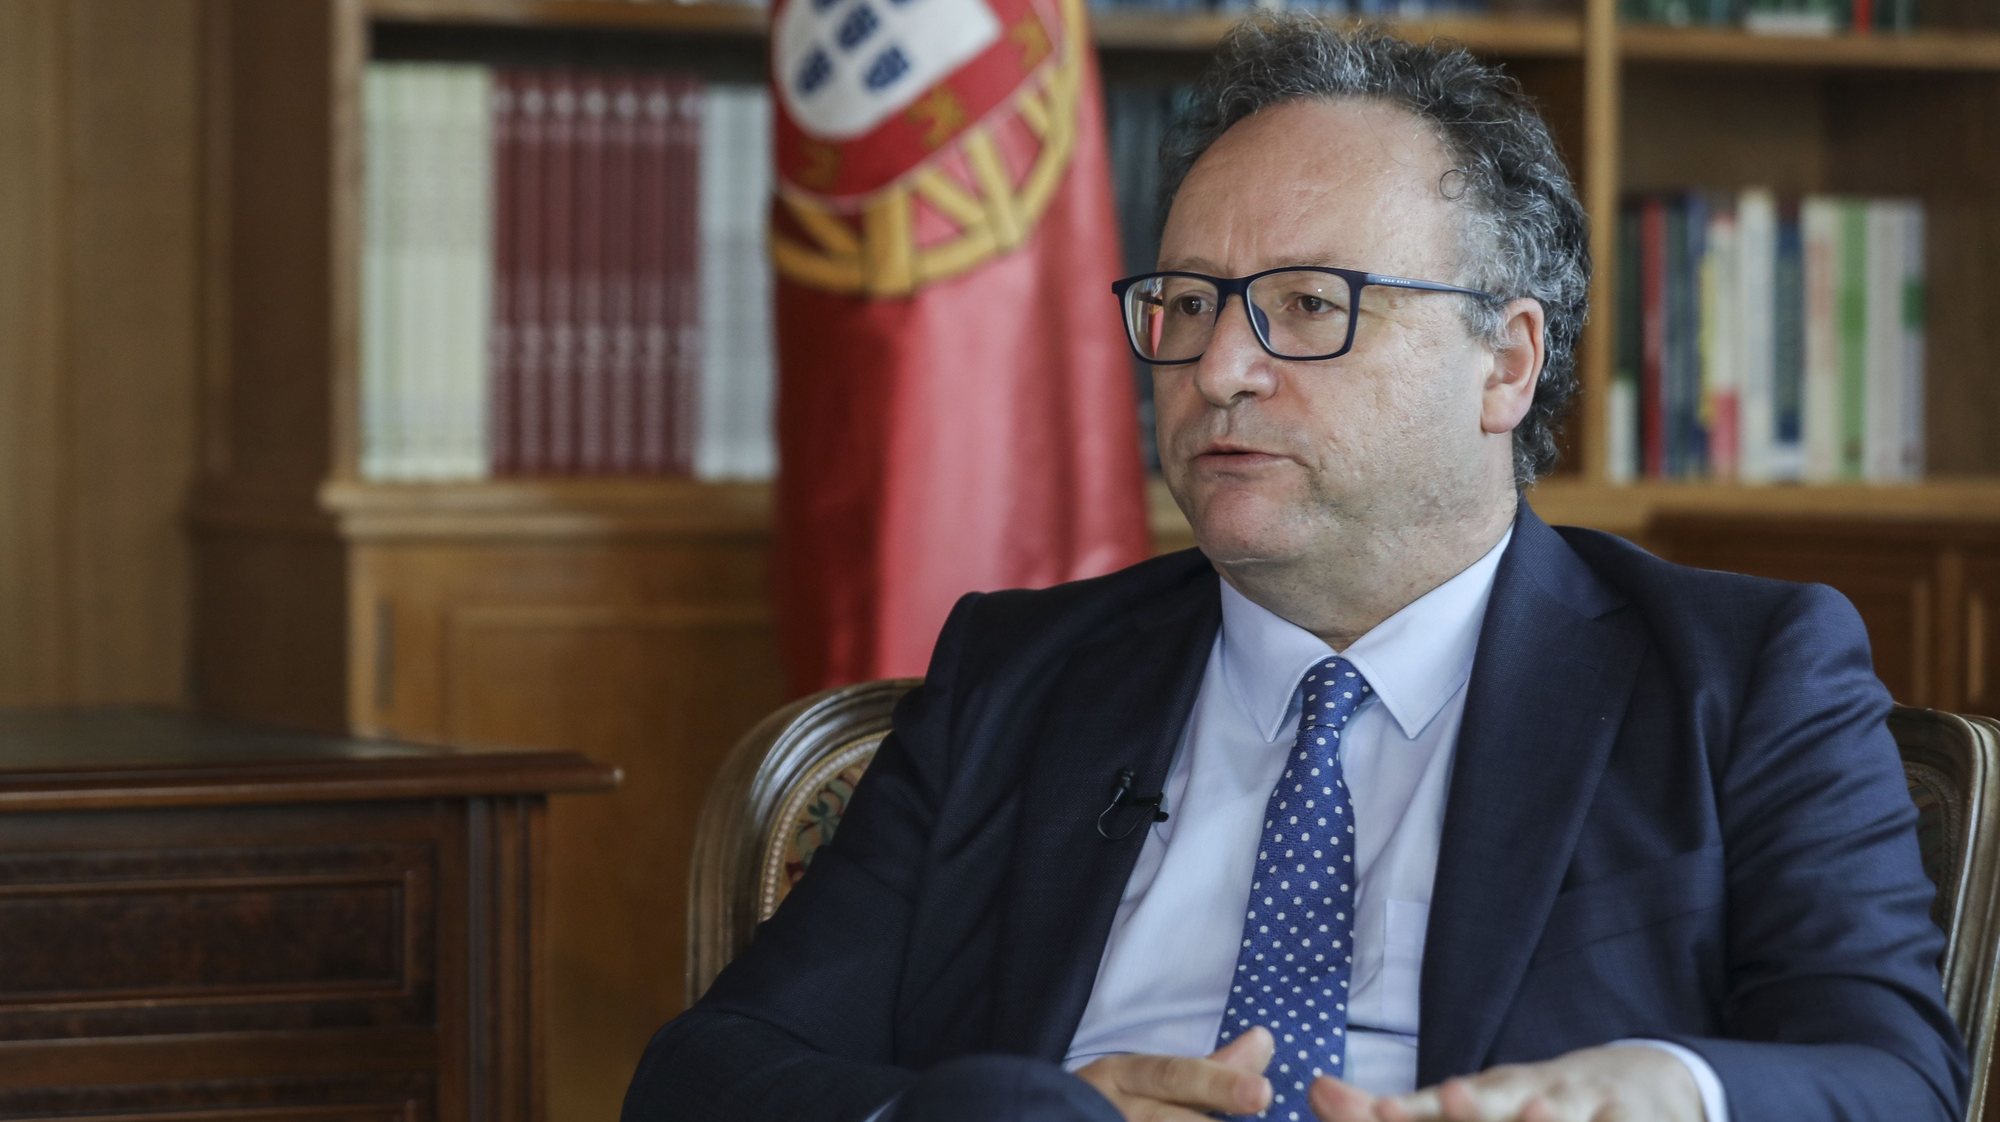 Entrevista ao presidente do Conselho Económico e Social, Francisco Assis na sede do mesmo em Lisboa, 6 de julho de 2021. (ACOMPANHA TEXTO DE 11 DE JULHO DE 2021). MIGUEL A. LOPES/LUSA